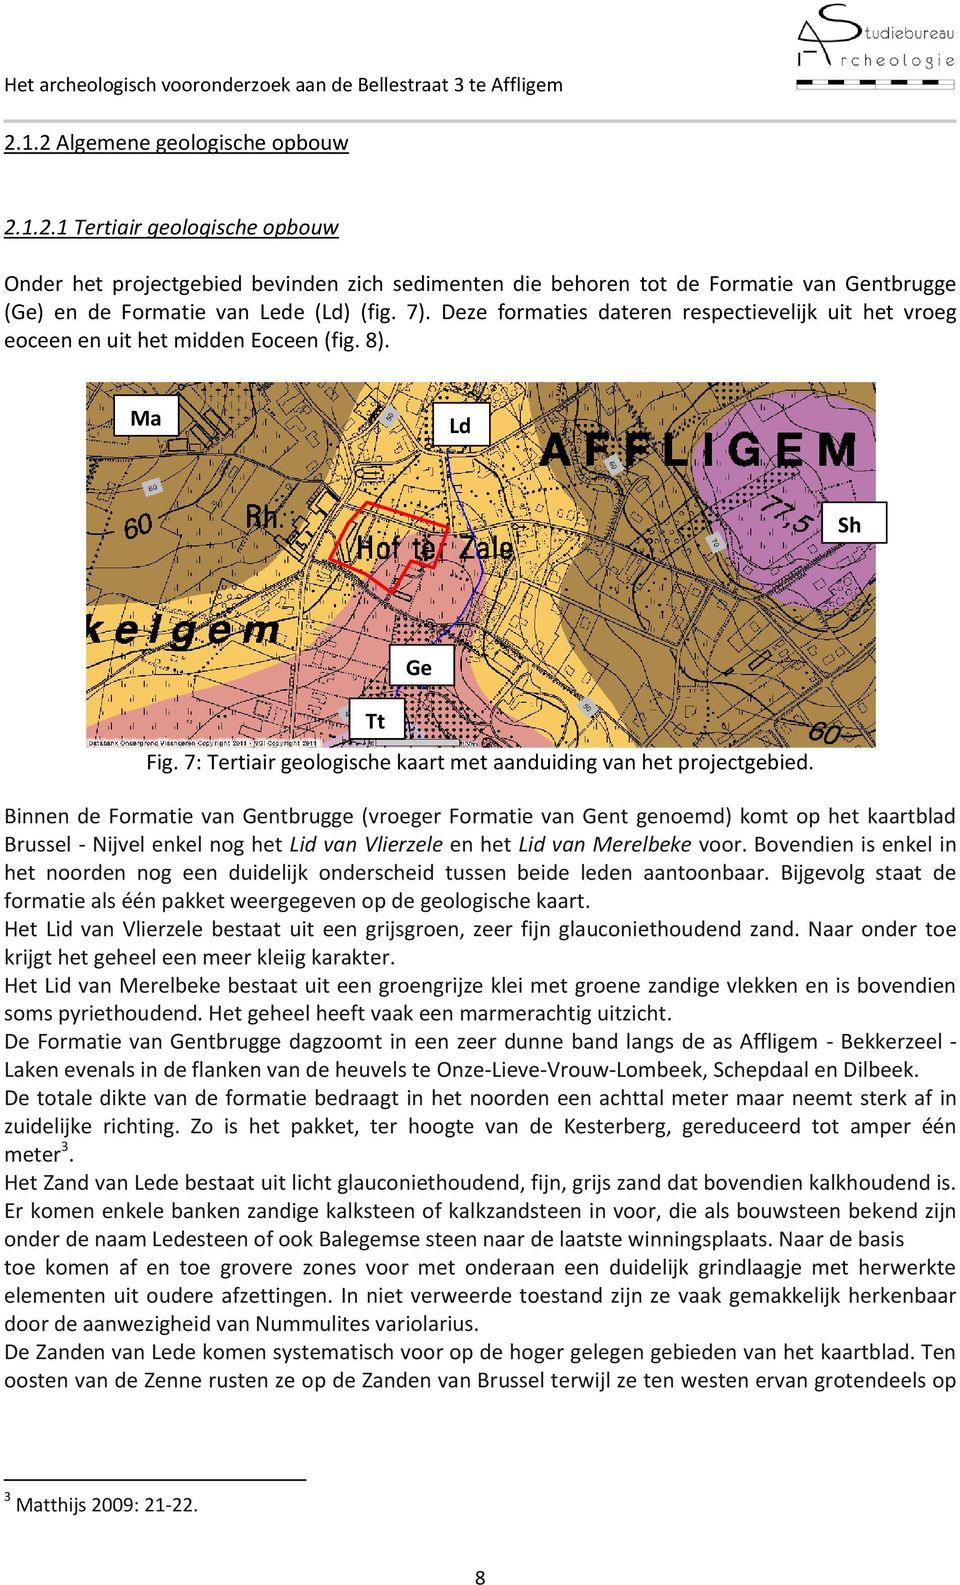 Binnen de Formatie van Gentbrugge (vroeger Formatie van Gent genoemd) komt op het kaartblad Brussel - Nijvel enkel nog het Lid van Vlierzele en het Lid van Merelbeke voor.